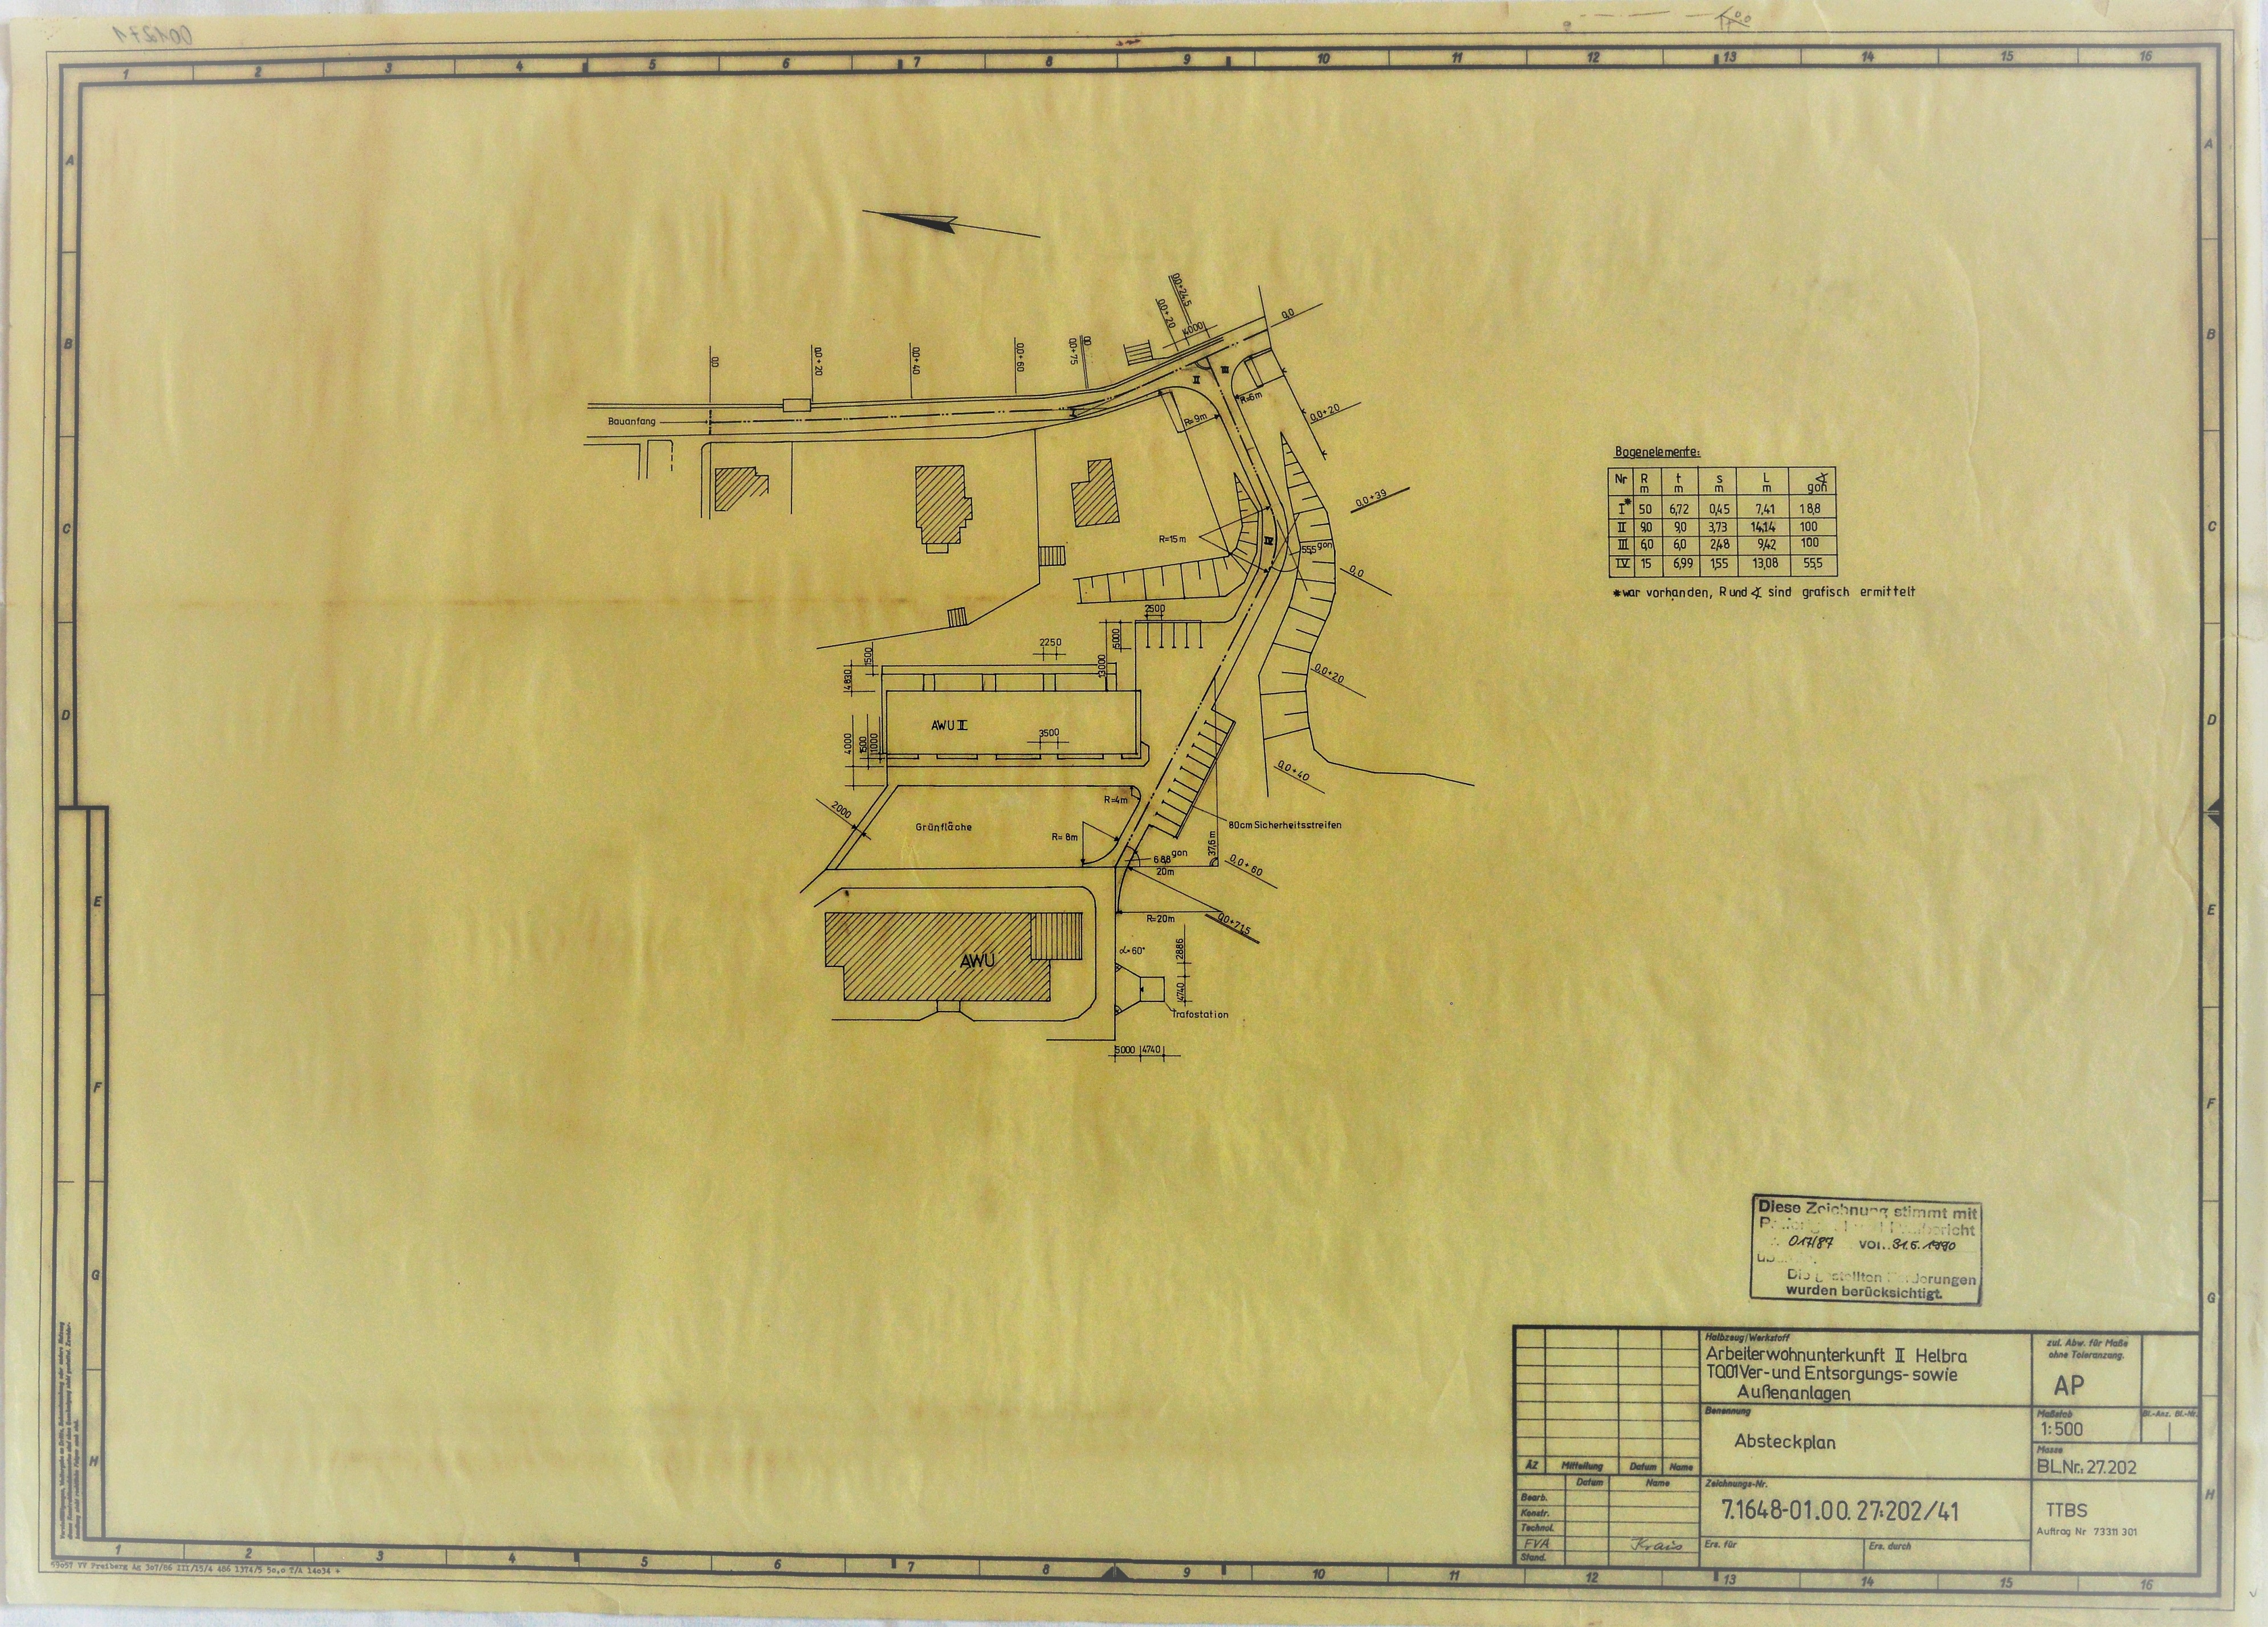 Arbeiterwohnunterkunft II Helbra TO.01 Ver- und Entsorgungs- sowie Außenanlagen Absteckplan (Mansfeld-Museum im Humboldt-Schloss CC BY-NC-SA)